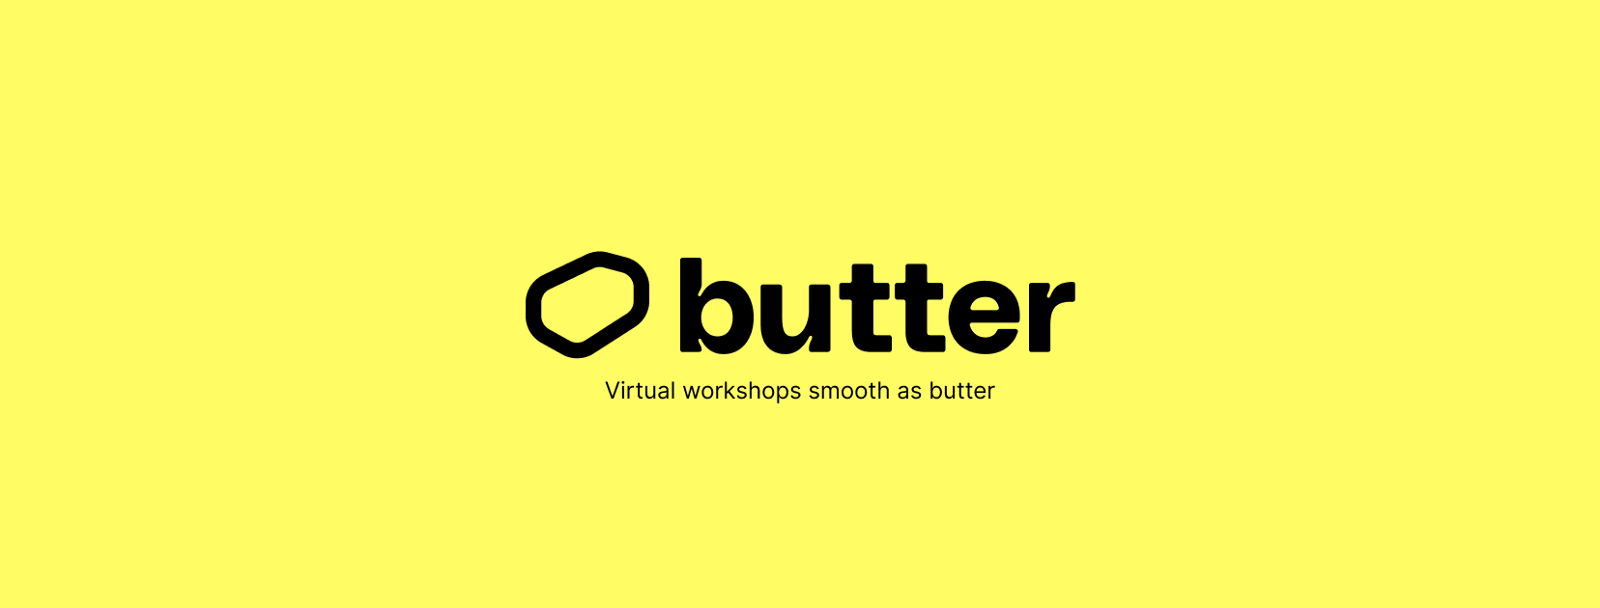 Butter: Make online workshops great again